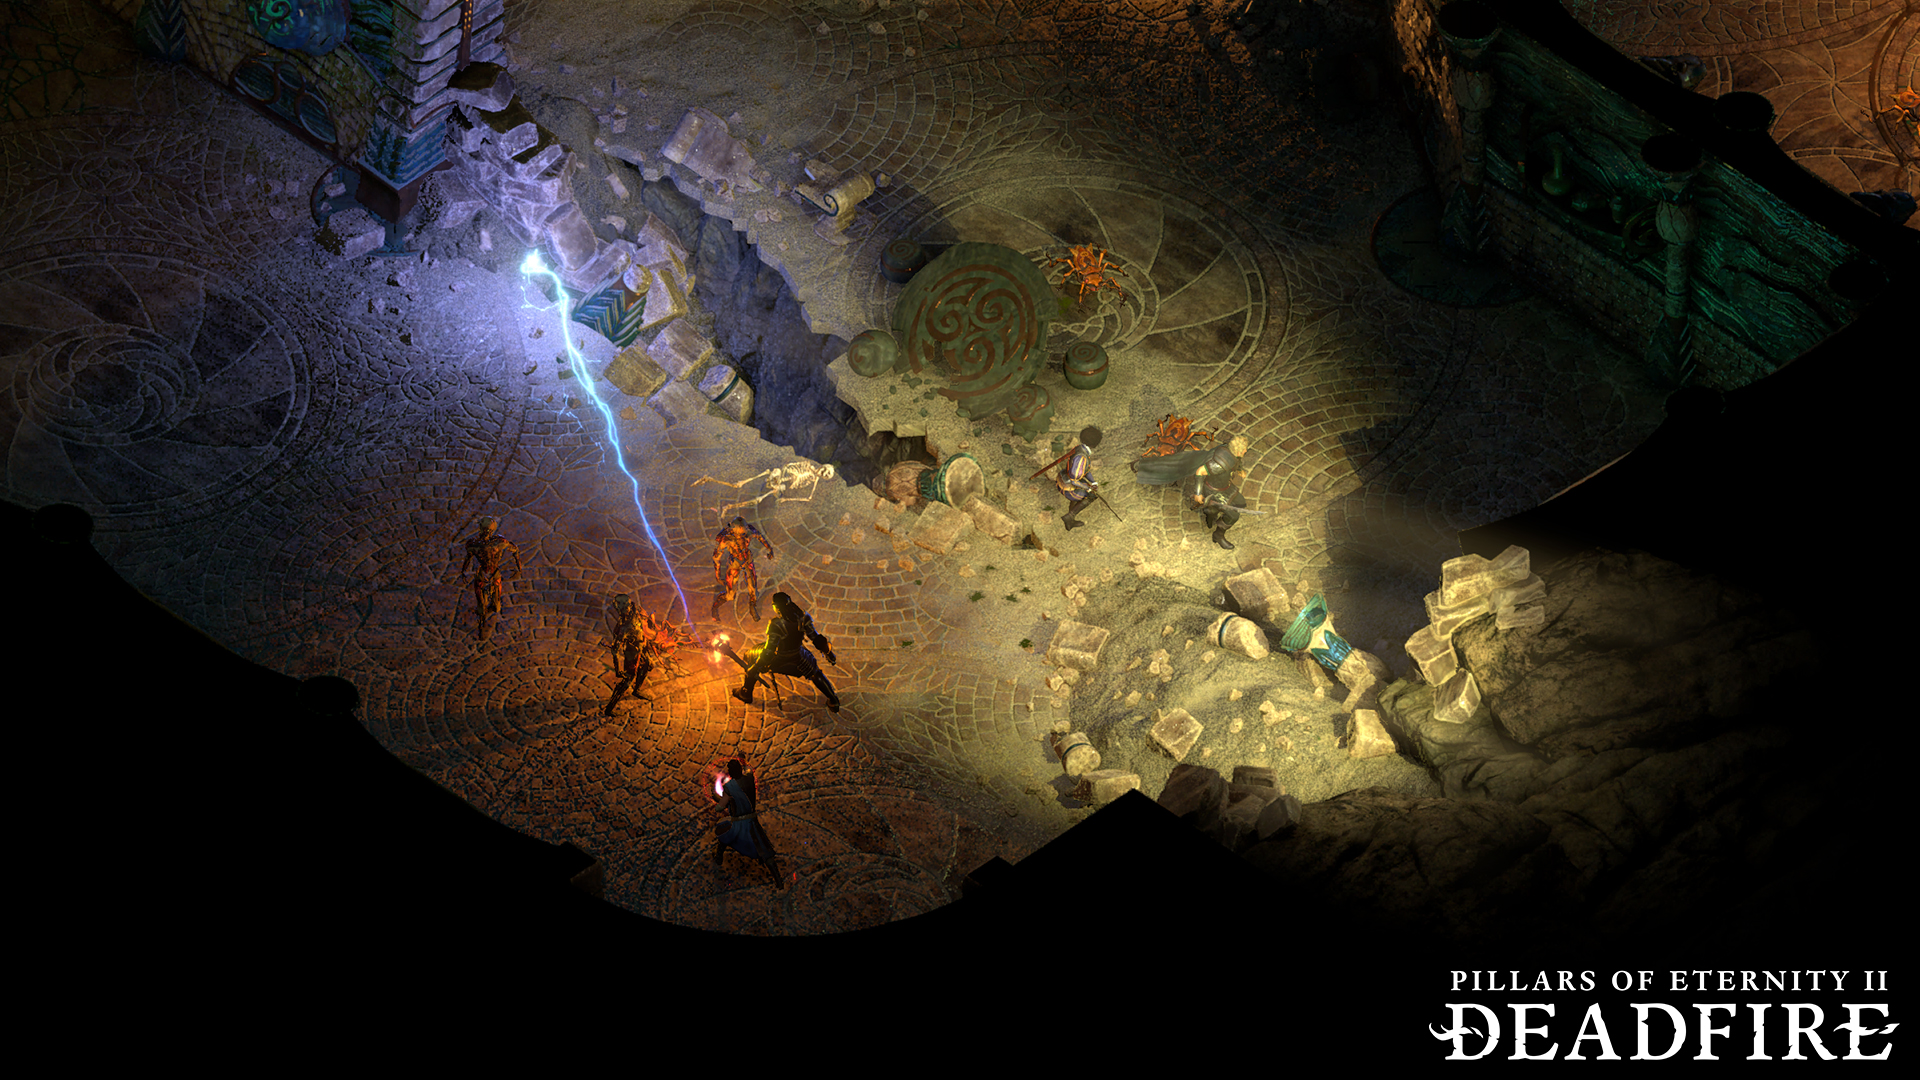 Pillars of Eternity II: Deadfire HD Wallpaper. Background Image